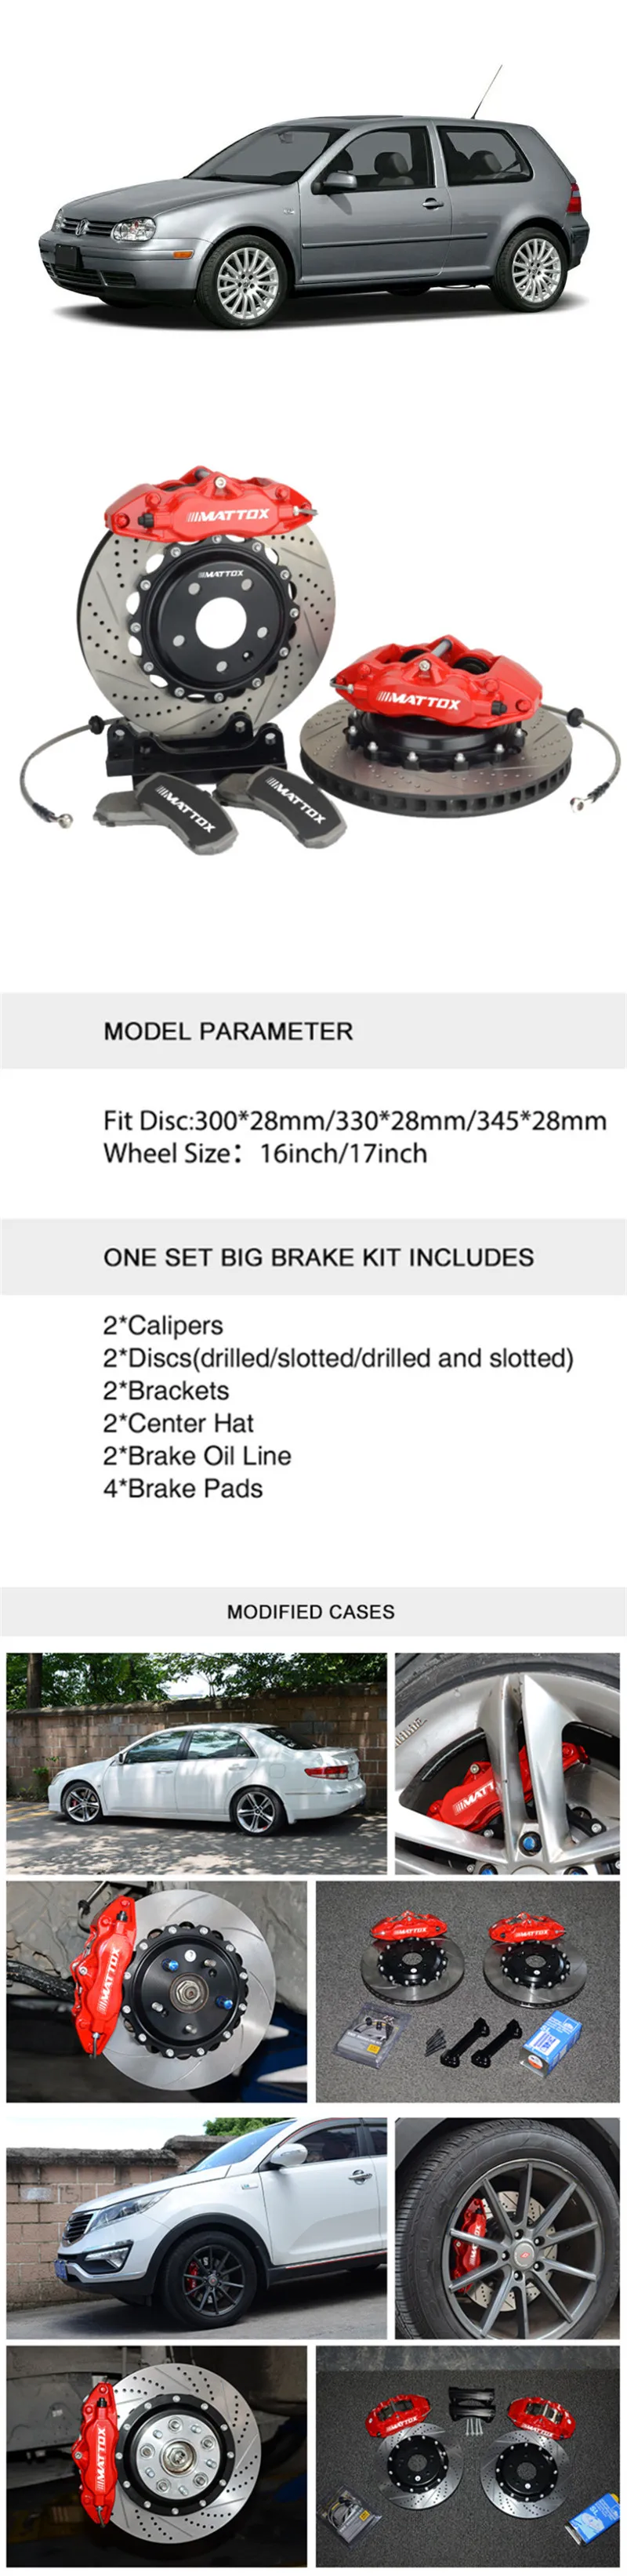 Mattox гоночная тормозная система, тормозной комплект CaliperKit 330*28 мм, Просверленный диск 17 дюймов, переднее колесо для VW Golf GTI 1,8 t VR6 2000 2005